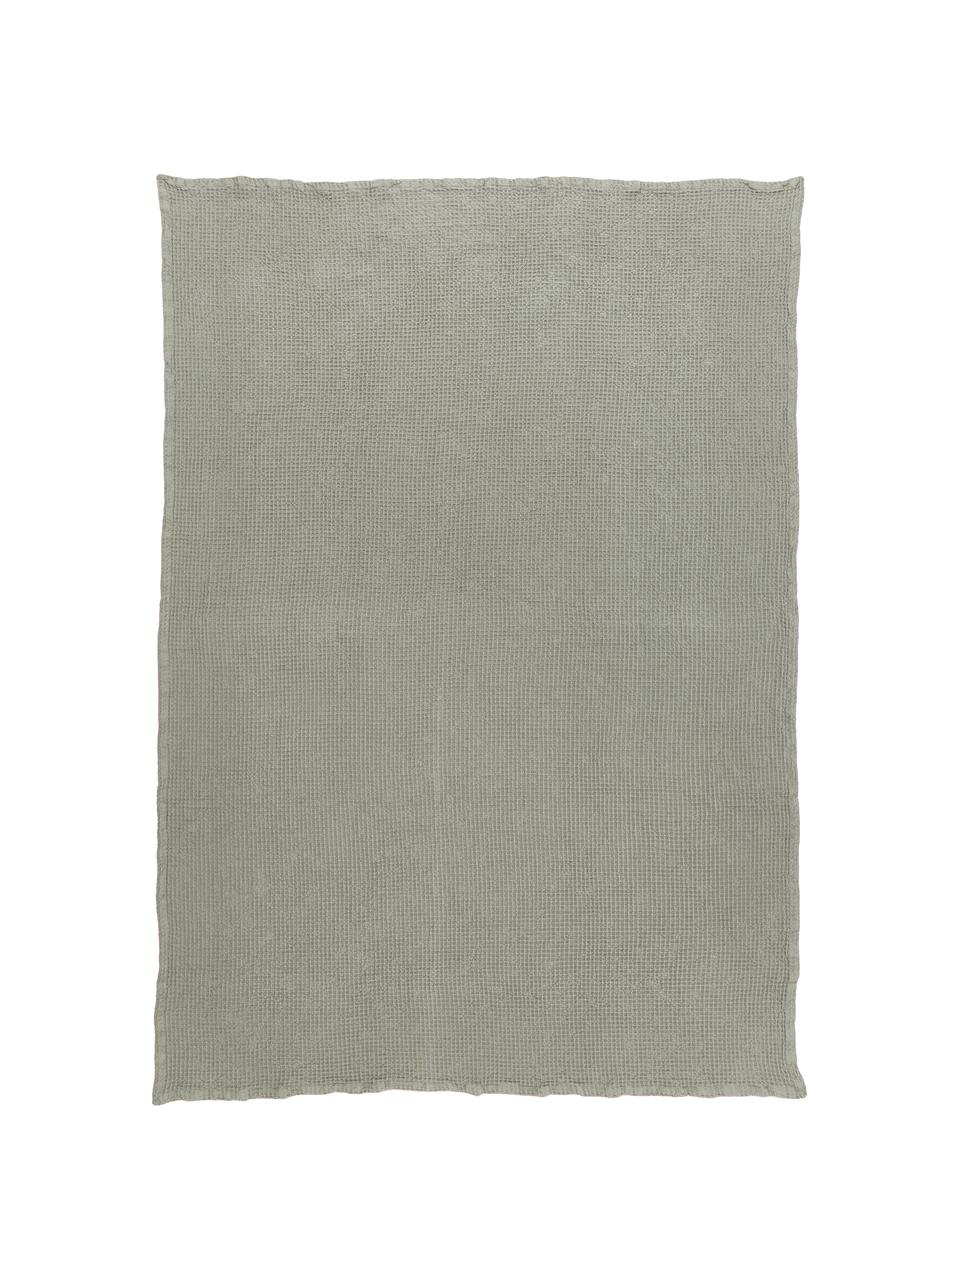 Narzuta z piki waflowej z bawełny Lois, 100% bawełna, Khaki, S 260 x D 260 cm (do łóżek o wymiarach od 200 x 200 cm)